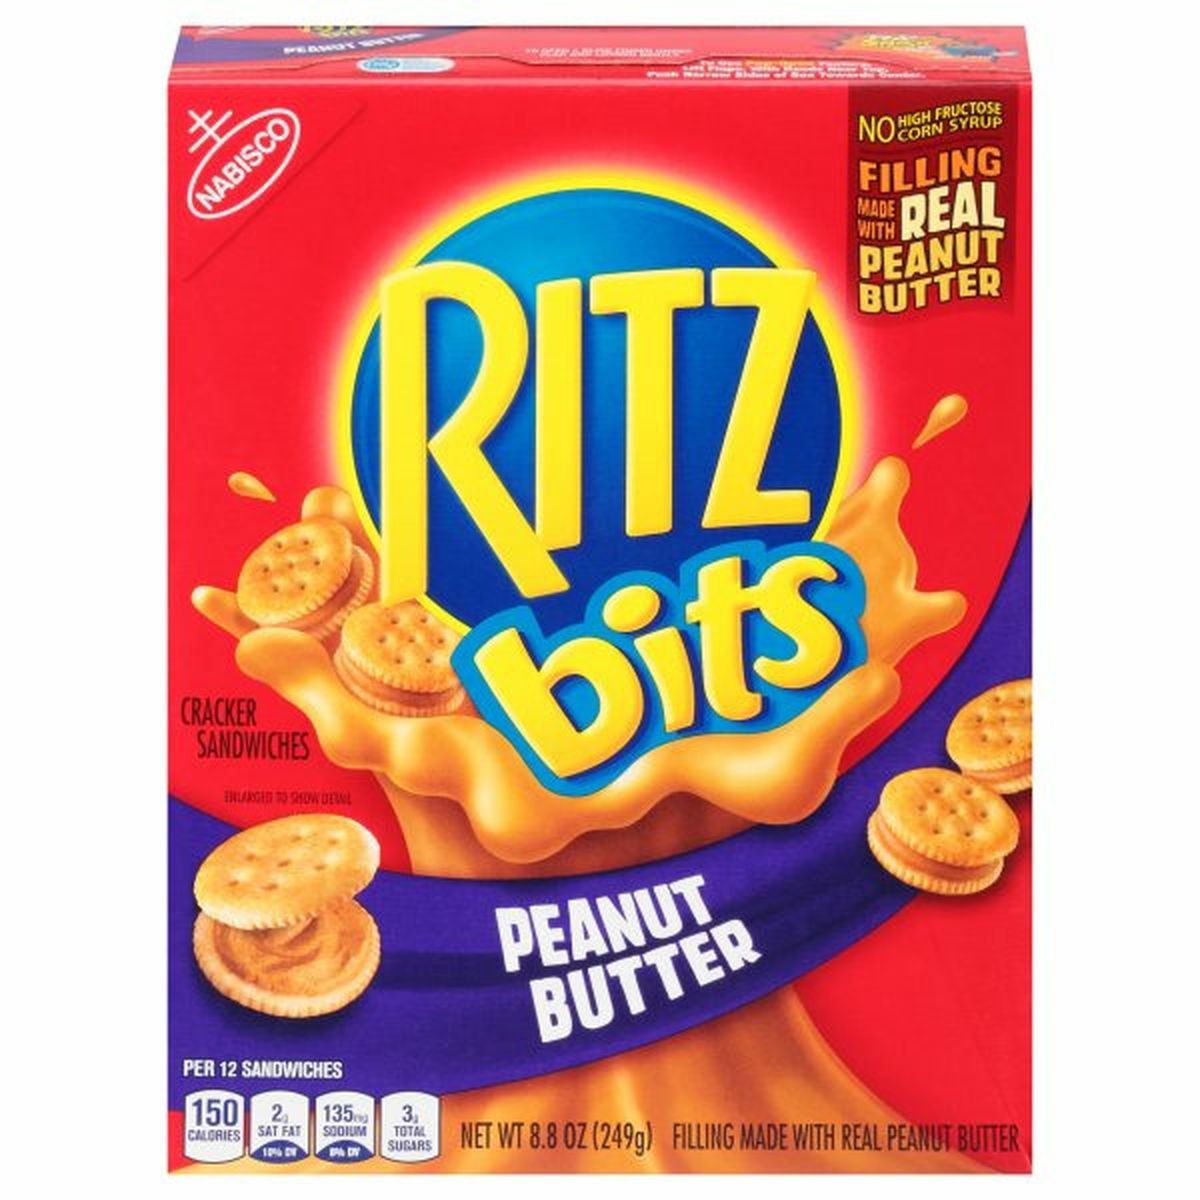 Calories in RITZ Cracker Sandwiches, Peanut Butter